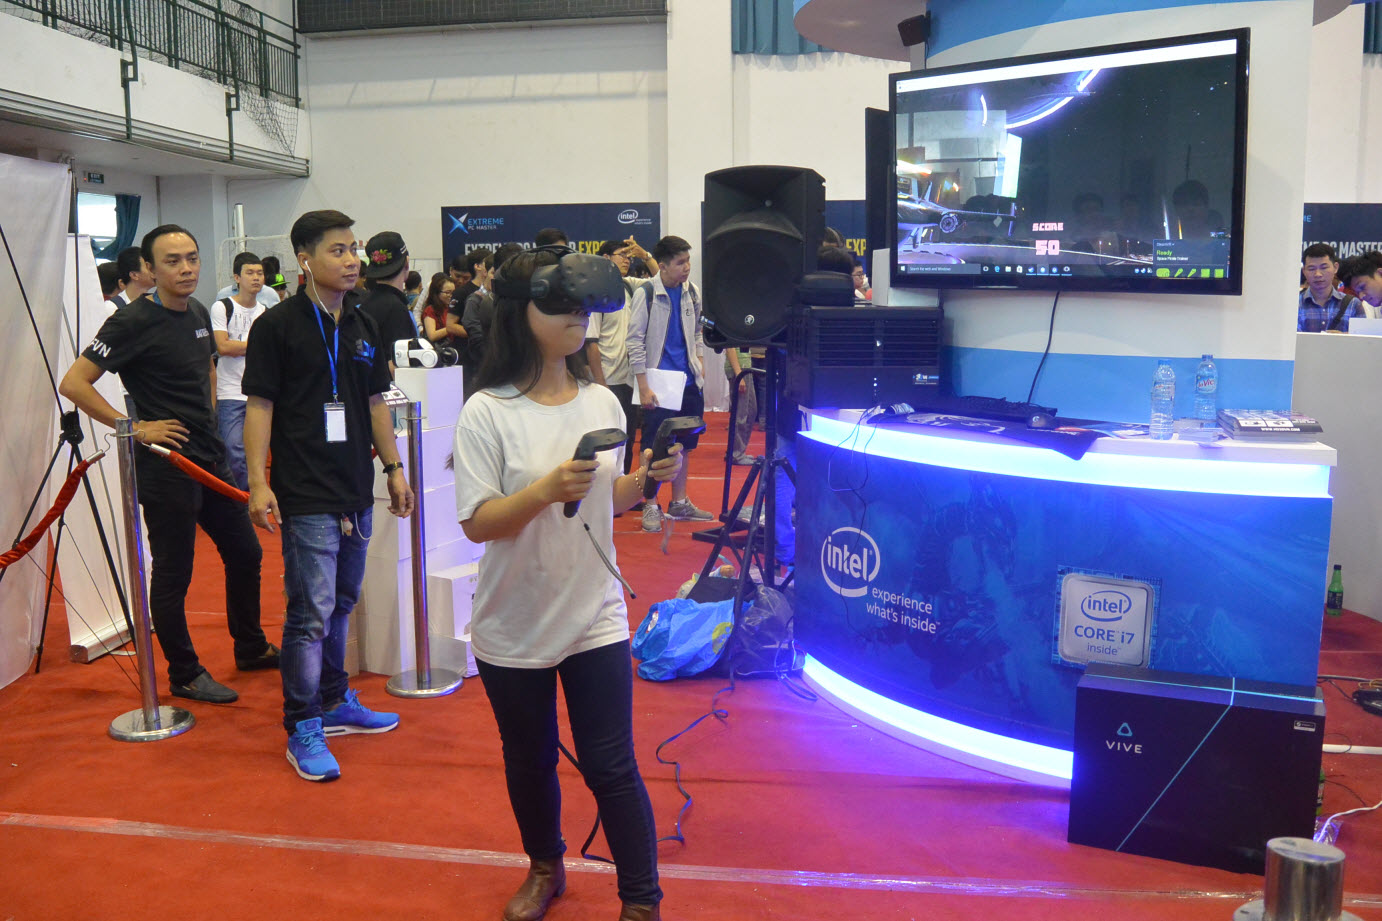 Kính Thực Tế Ào Samsung Gear VR ( S6 , S7 , Note 5 ) Seal + Tặng Gói Game VR giá 2 triệu - 6